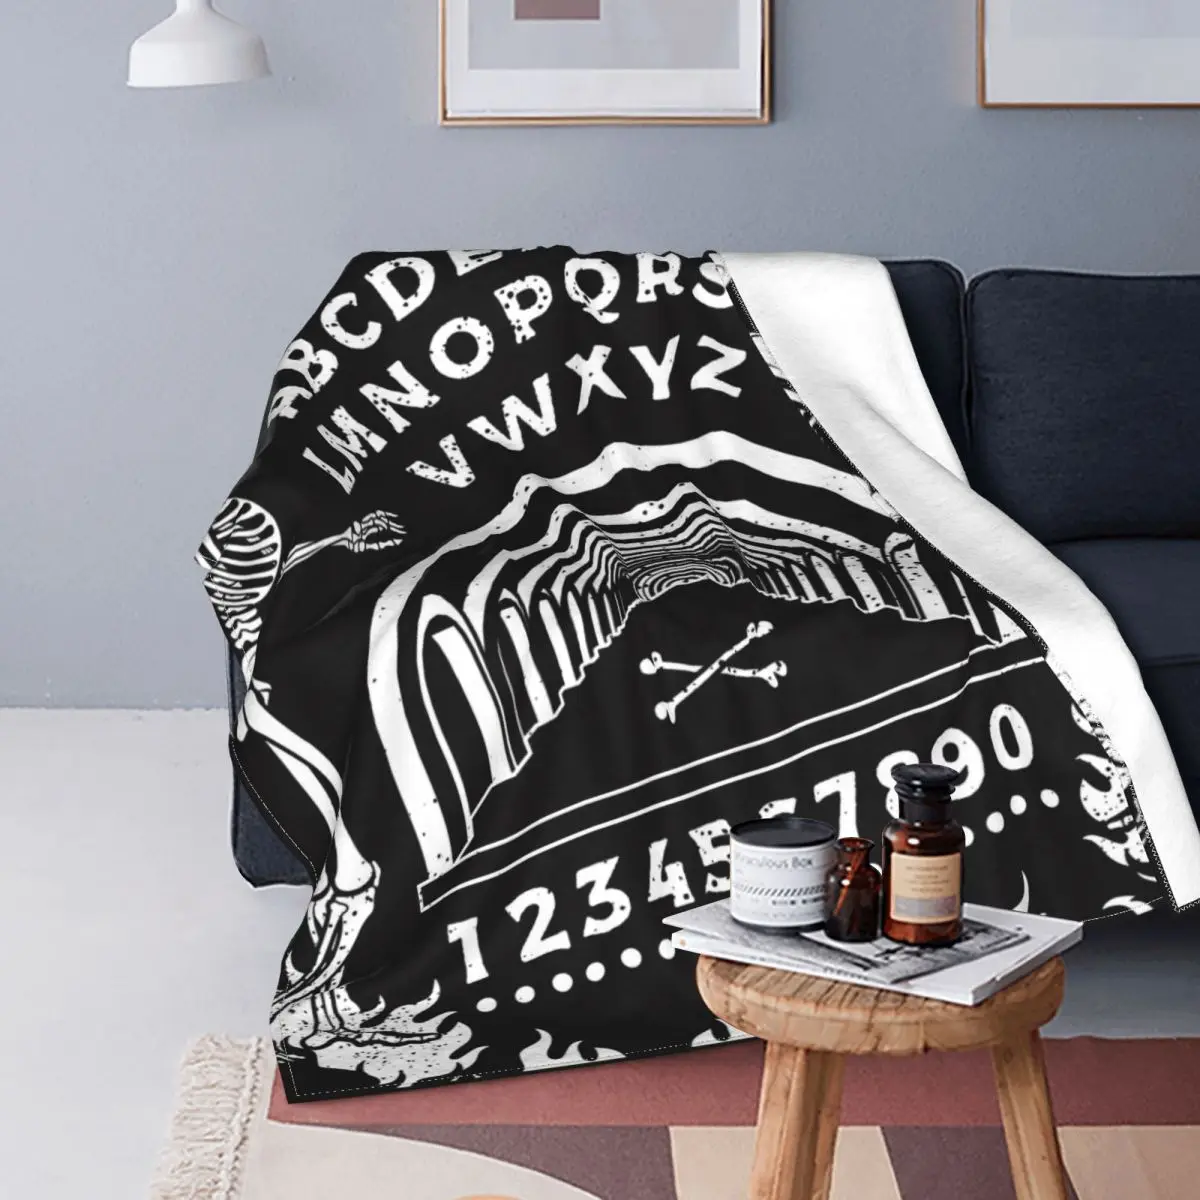 

Ouija доска Оккультизм Хэллоуин фланелевые одеяла танцующие Скелеты Череп мистический плед одеяла для дома гостиницы диван покрывала